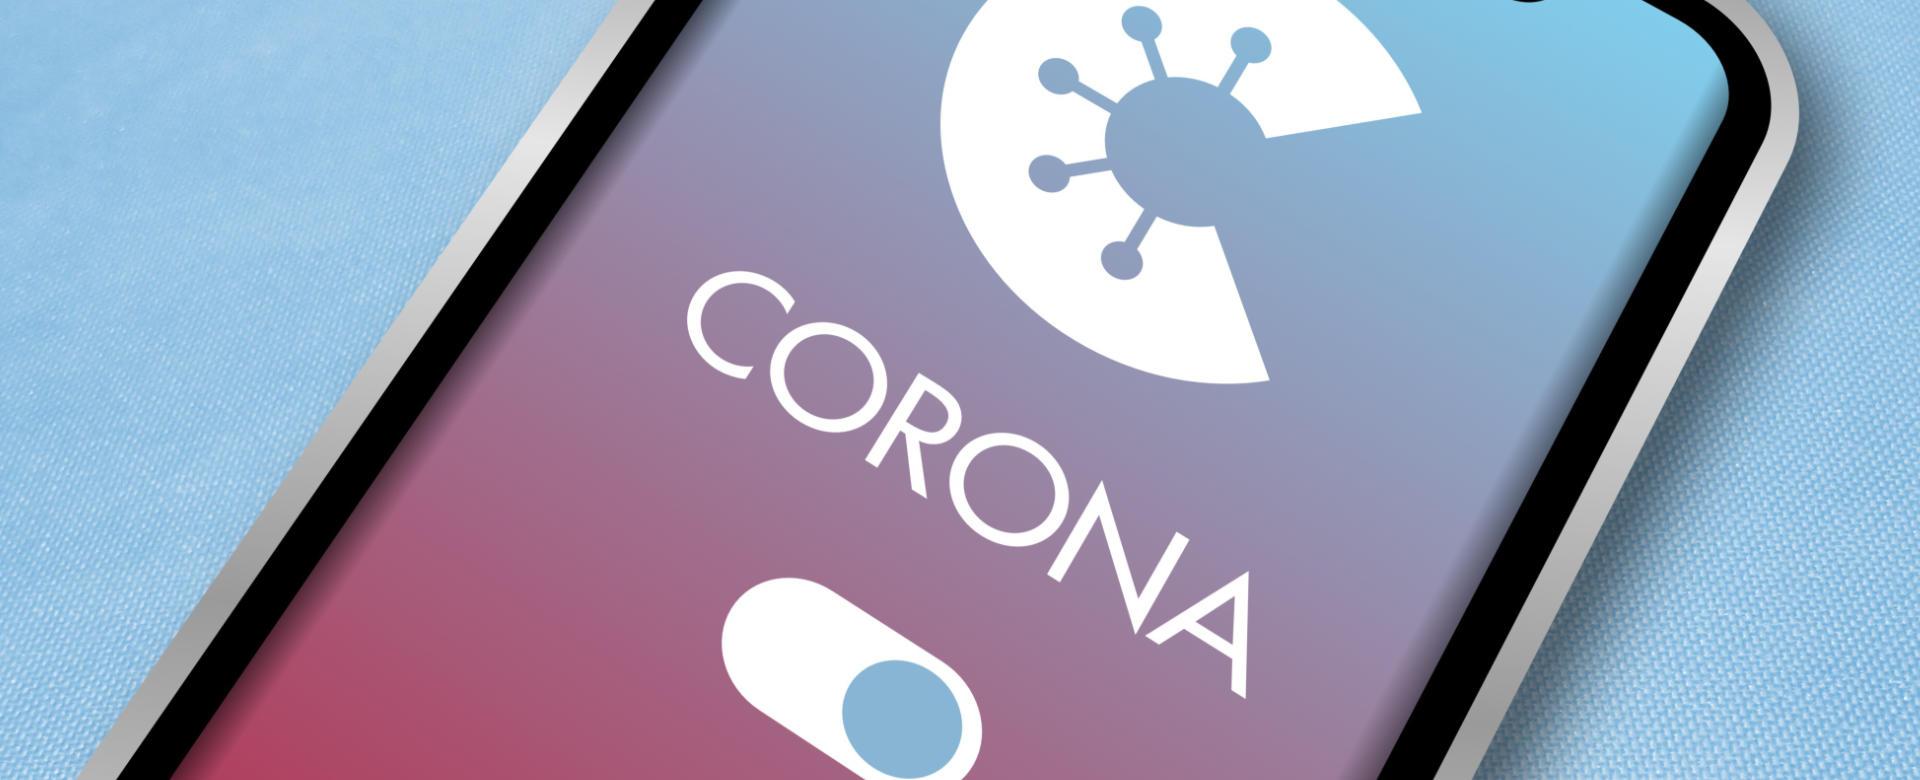 Corona App auf einem Smartphone